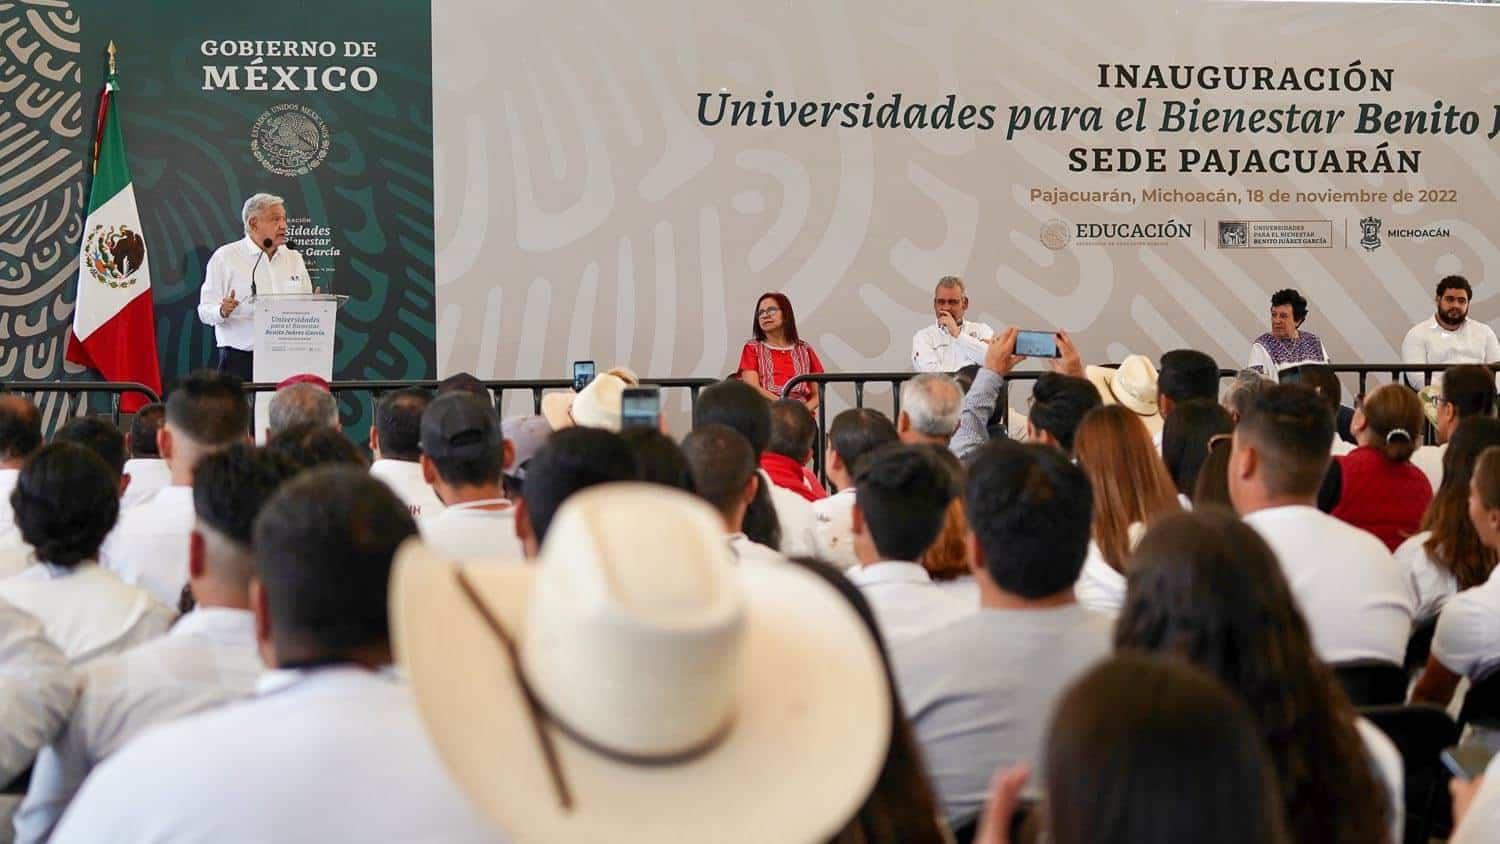 Programas para el Bienestar benefician a habitantes de Michoacán: presidente